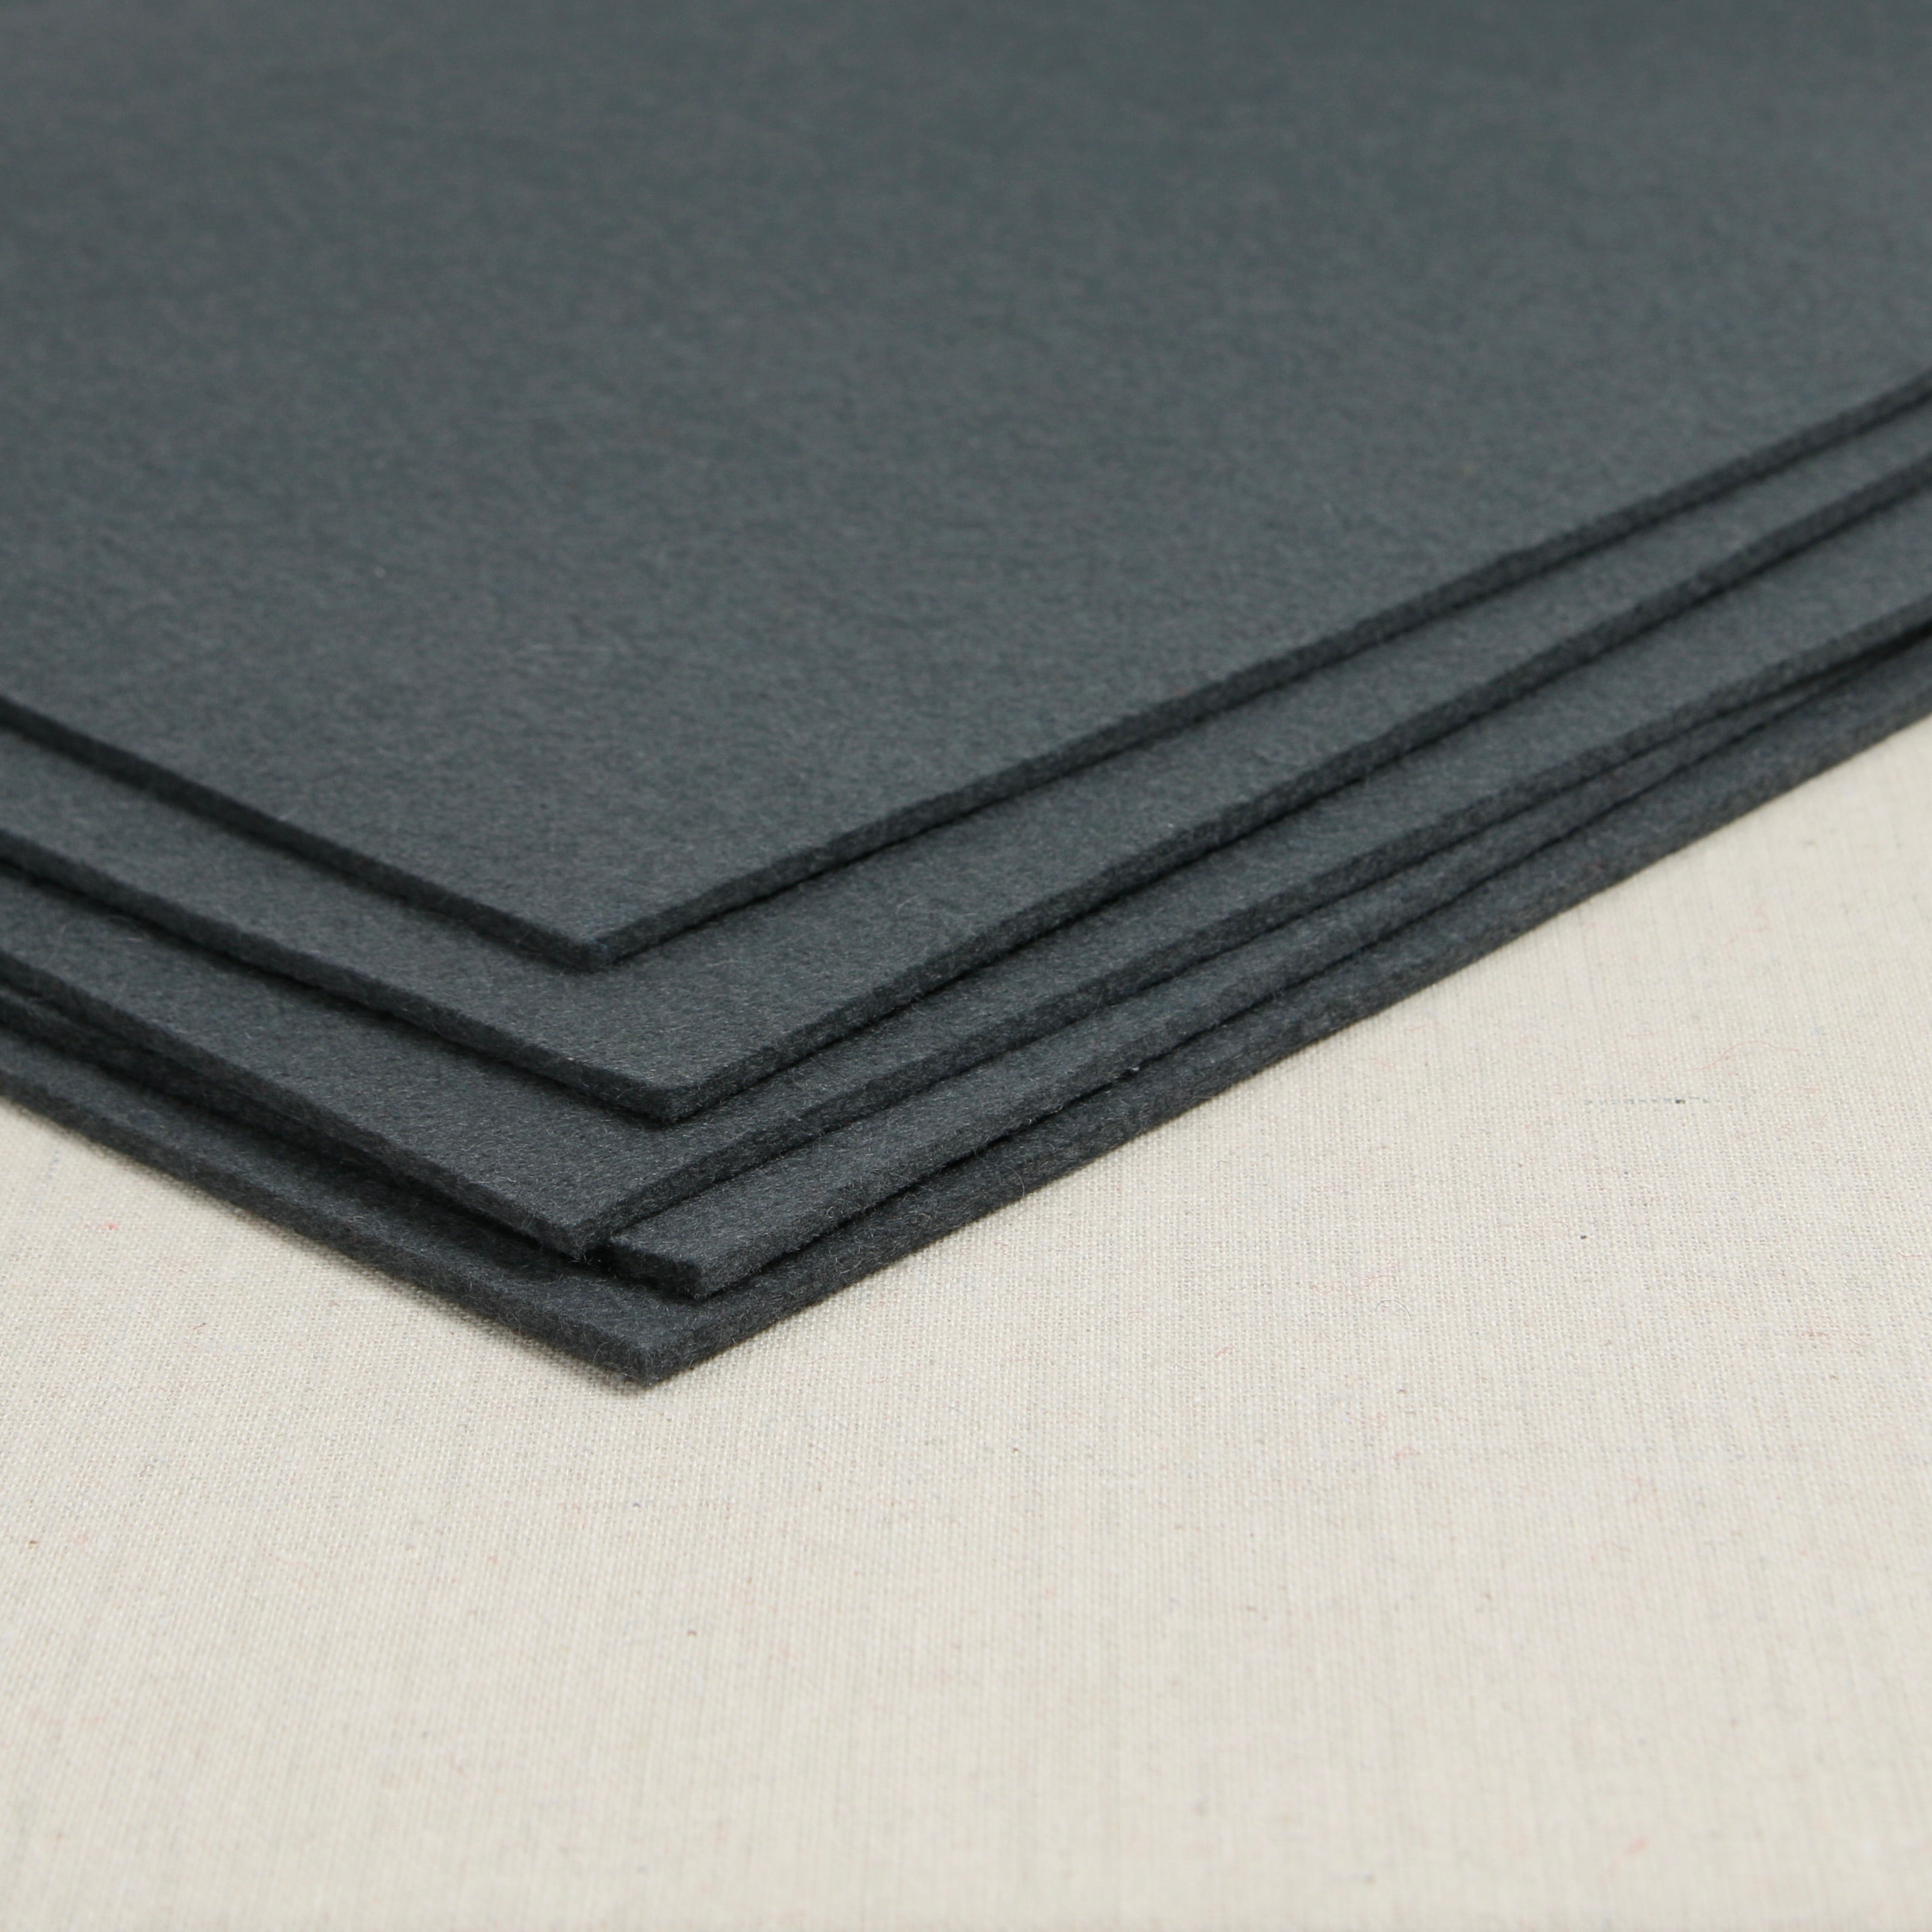 12 x 72 x 1/4 Gray Pressed Wool Felt Sheet